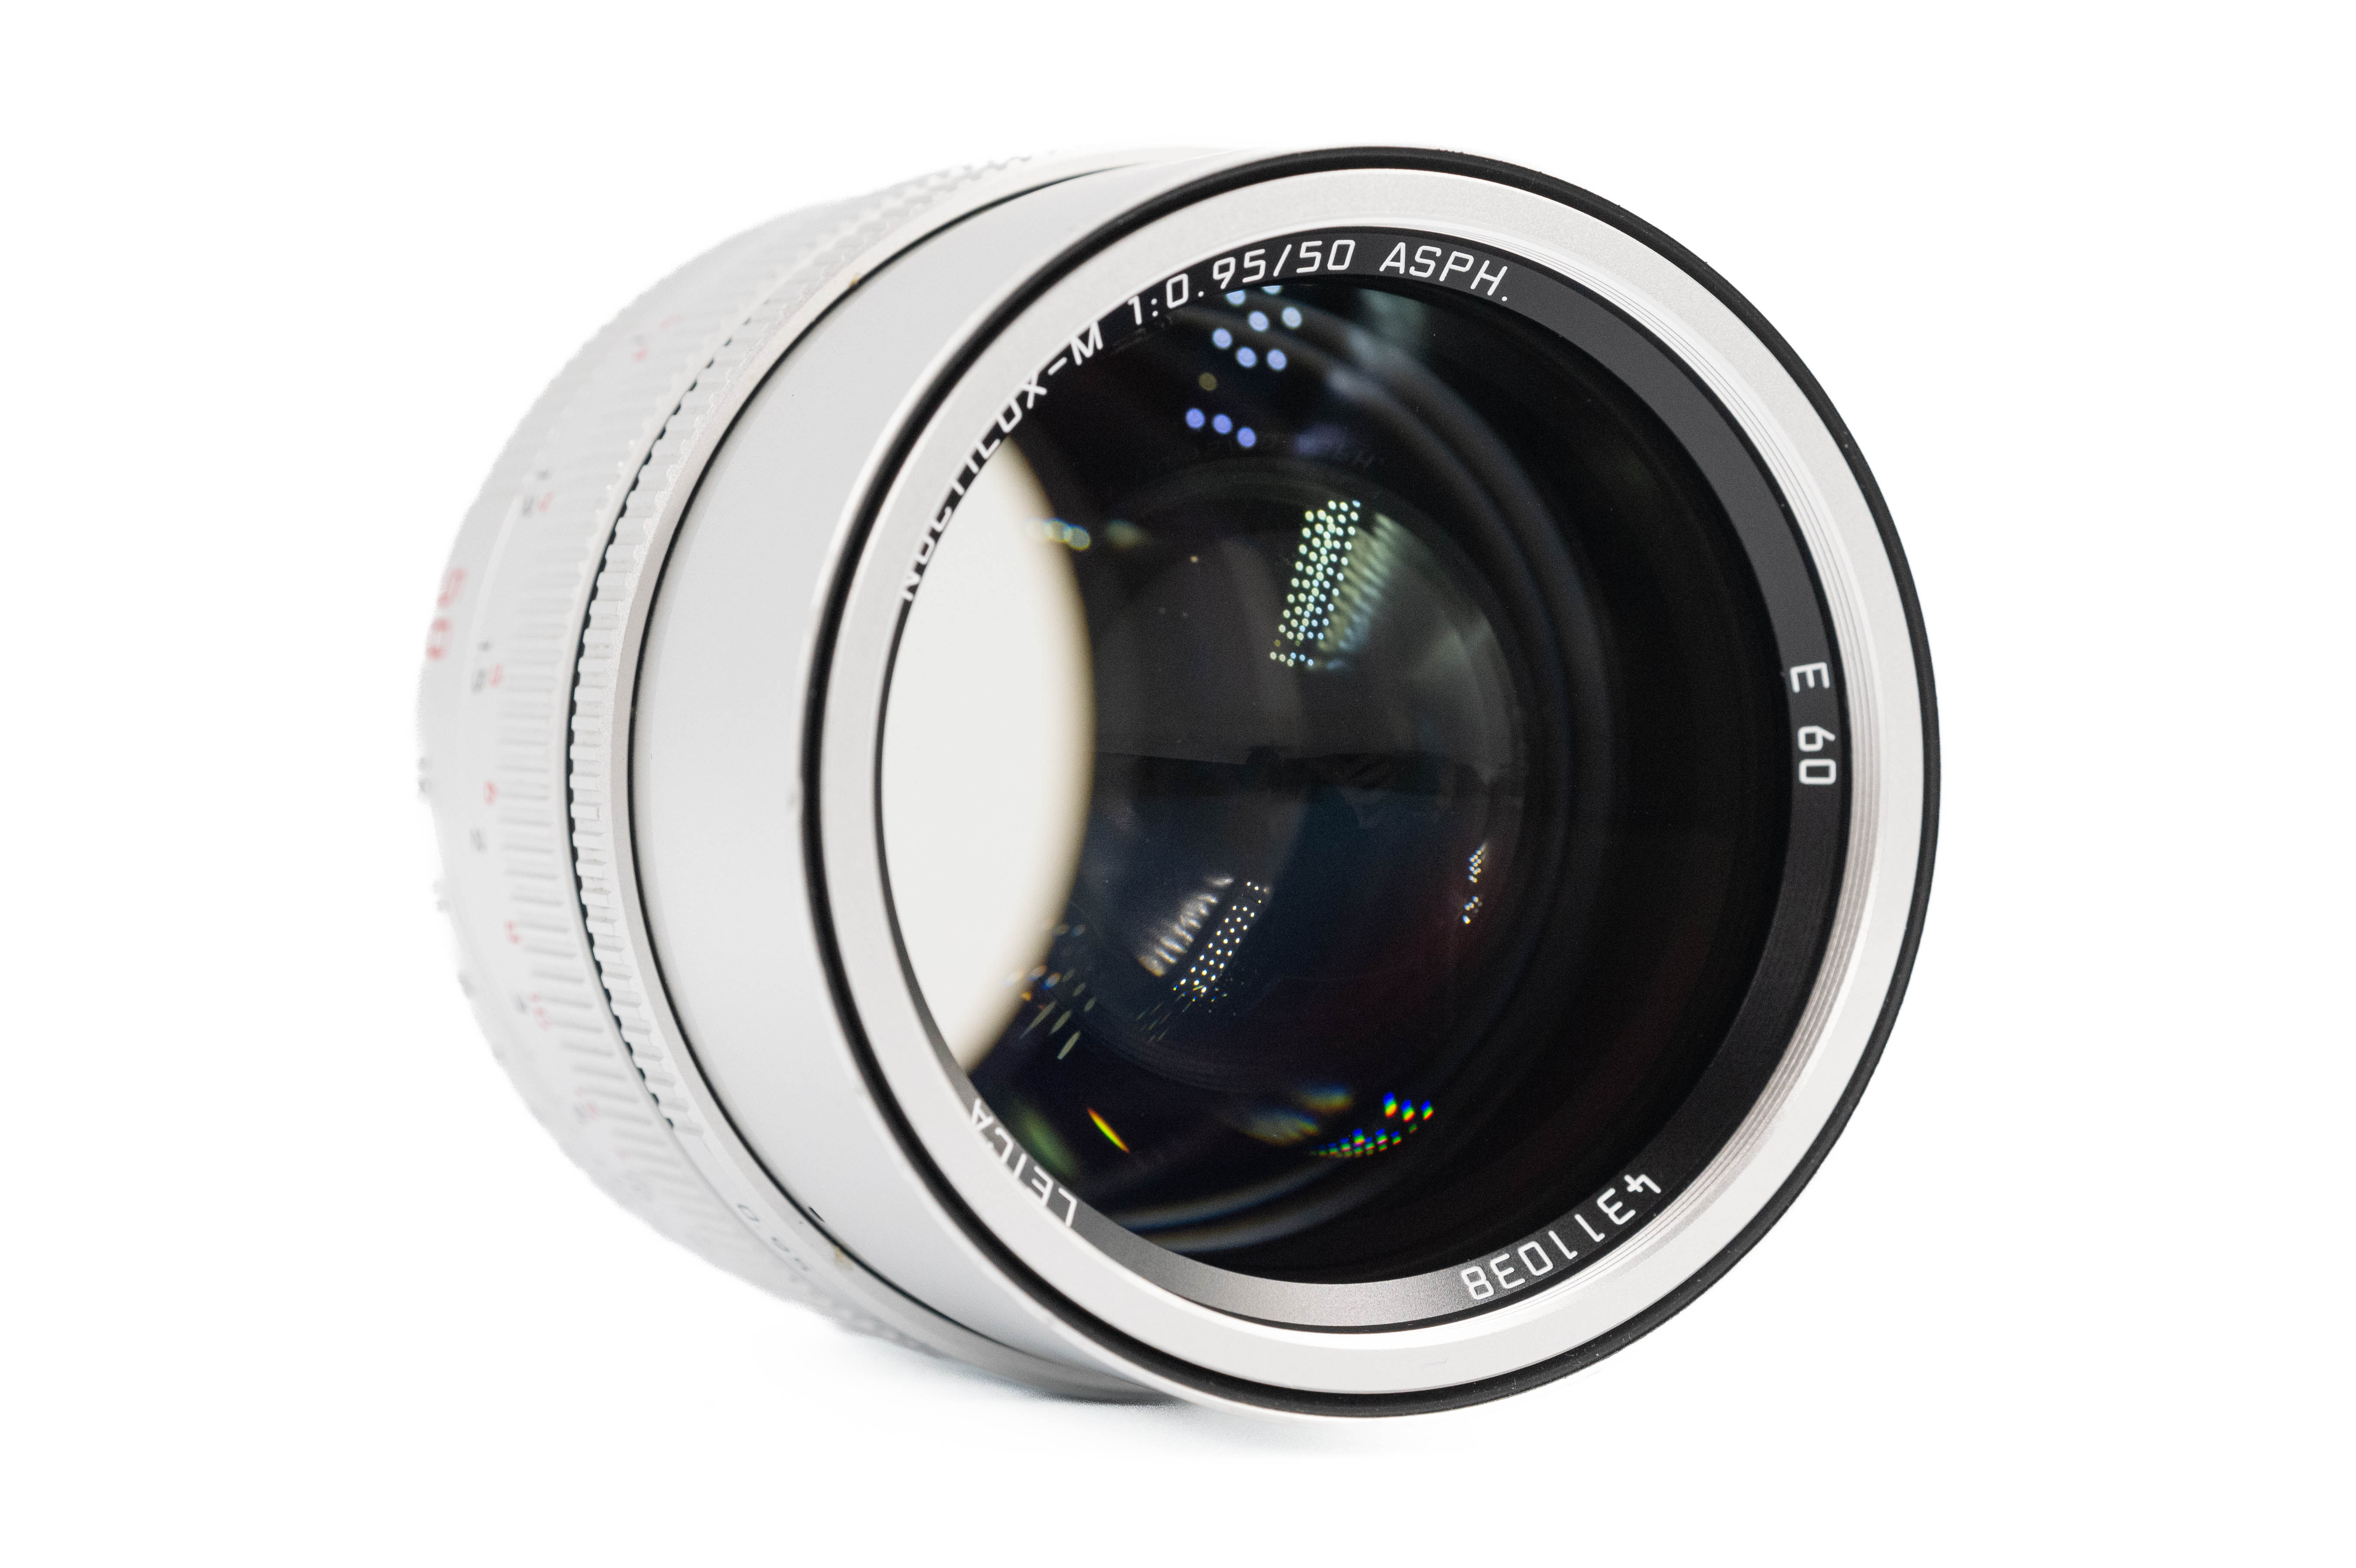 Leica Noctilux-M 50mm f/0.95 ASPH Silver 11667